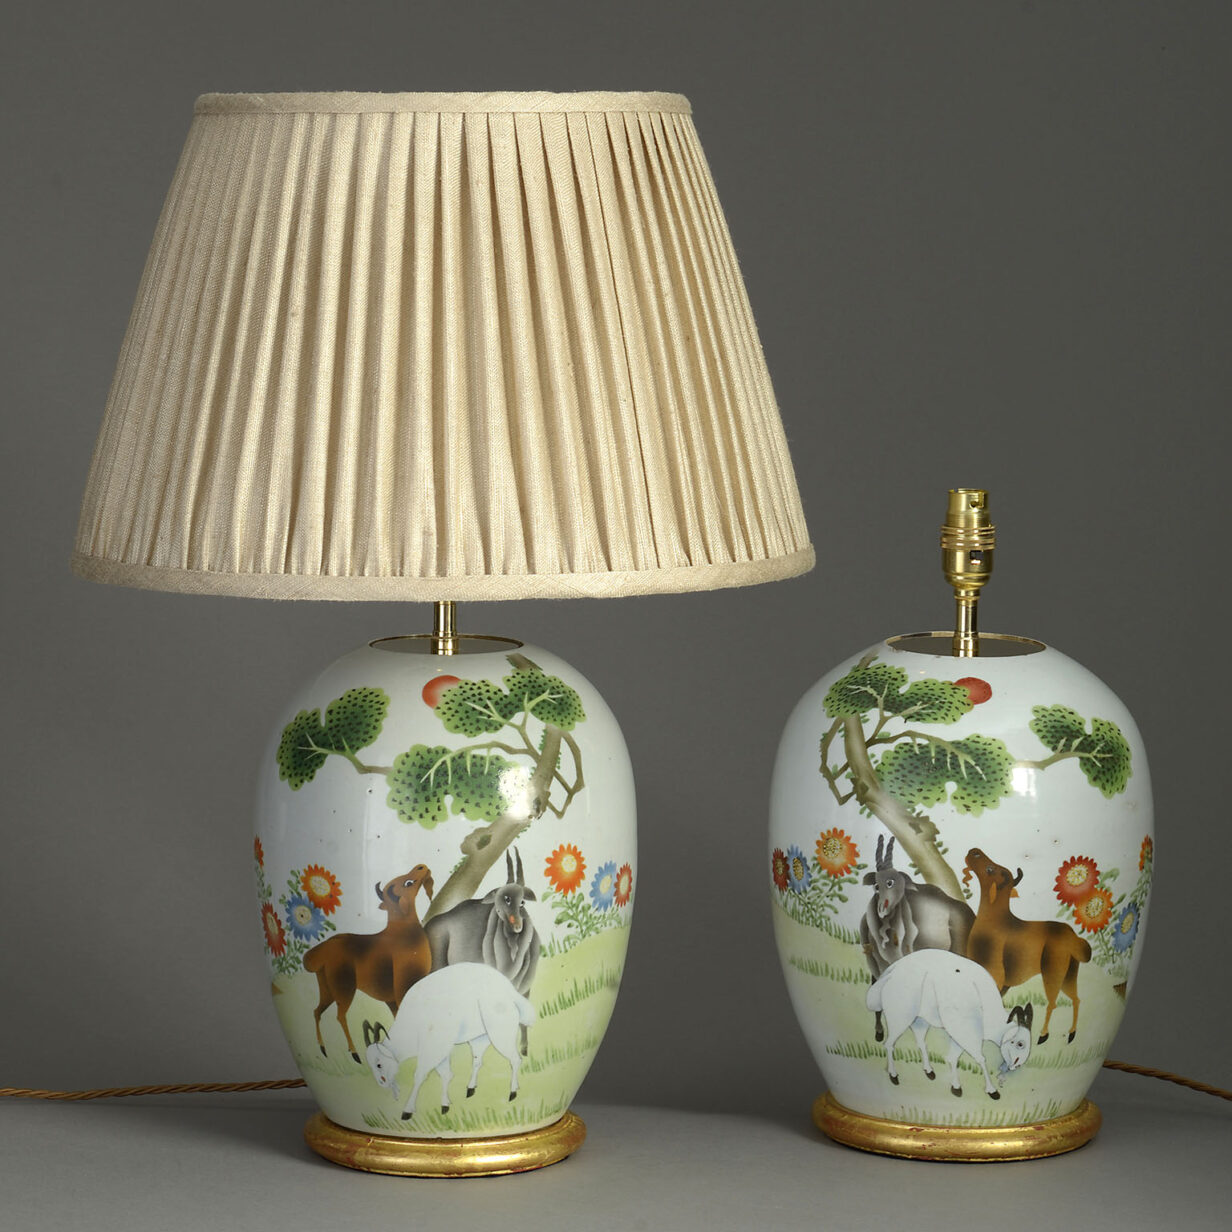 Pair of republic porcelain jar lamps